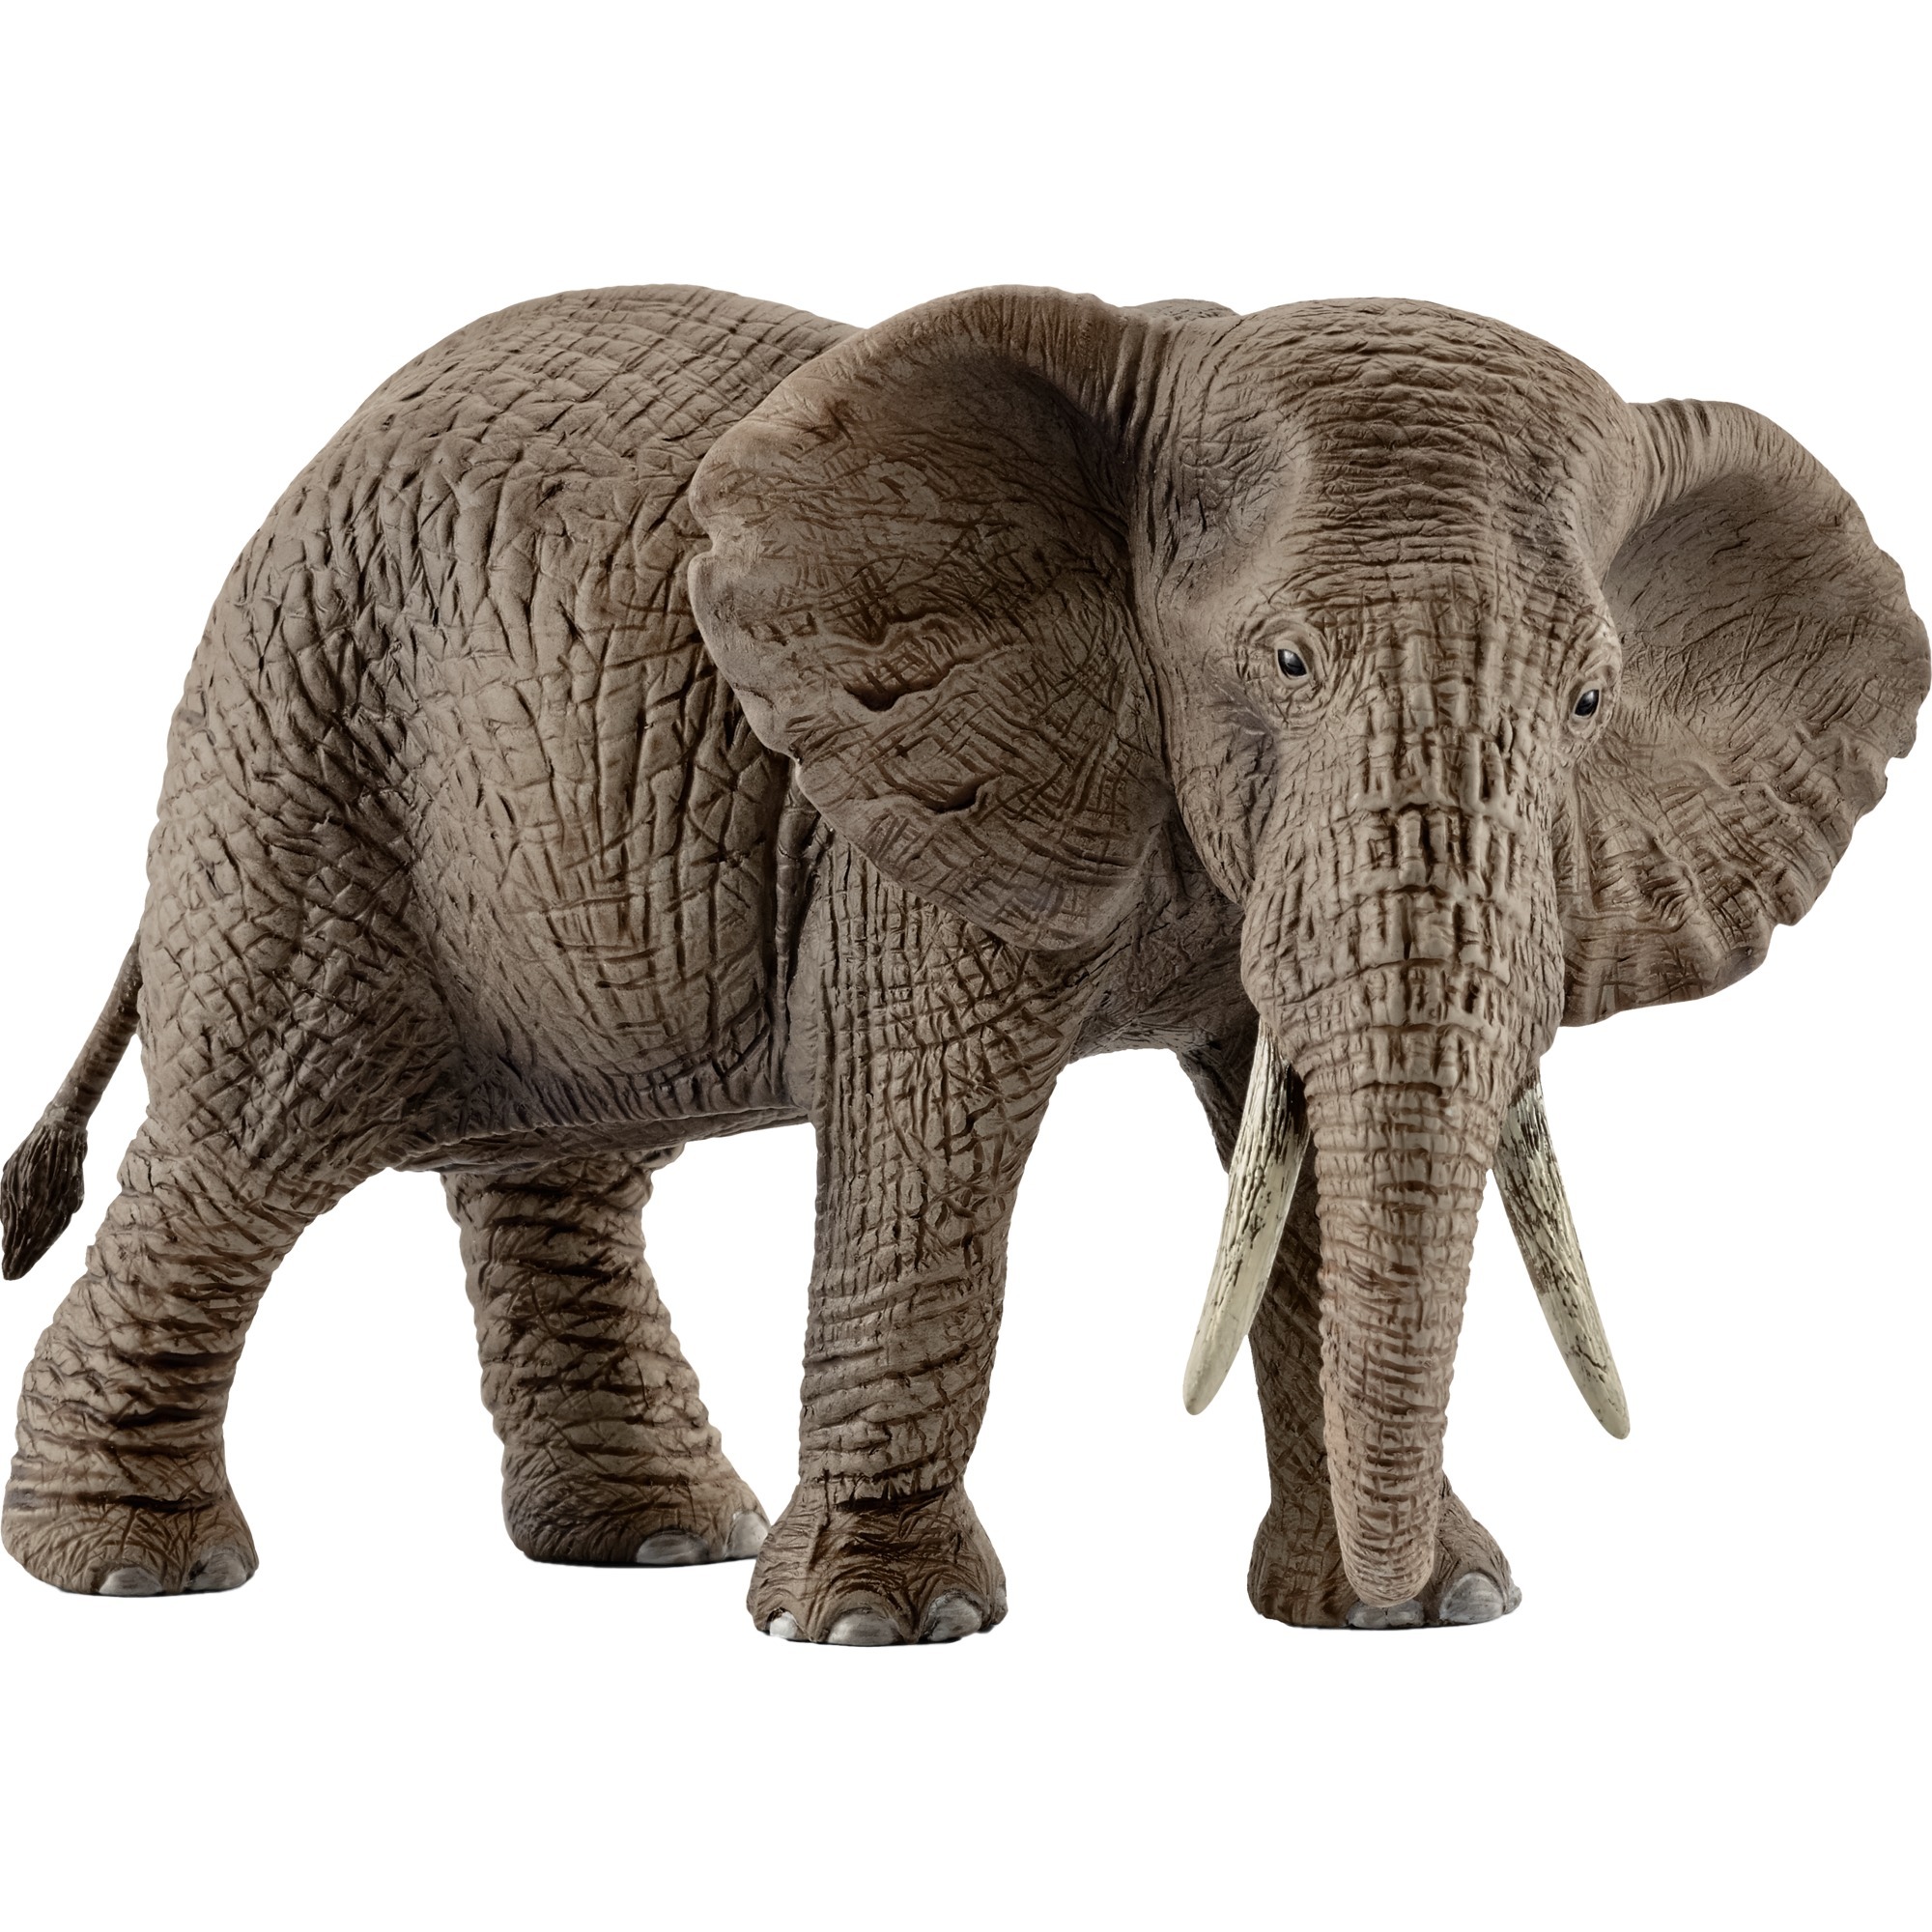 Image of Alternate - Afrikanische Elefantenkuh, Spielfigur online einkaufen bei Alternate